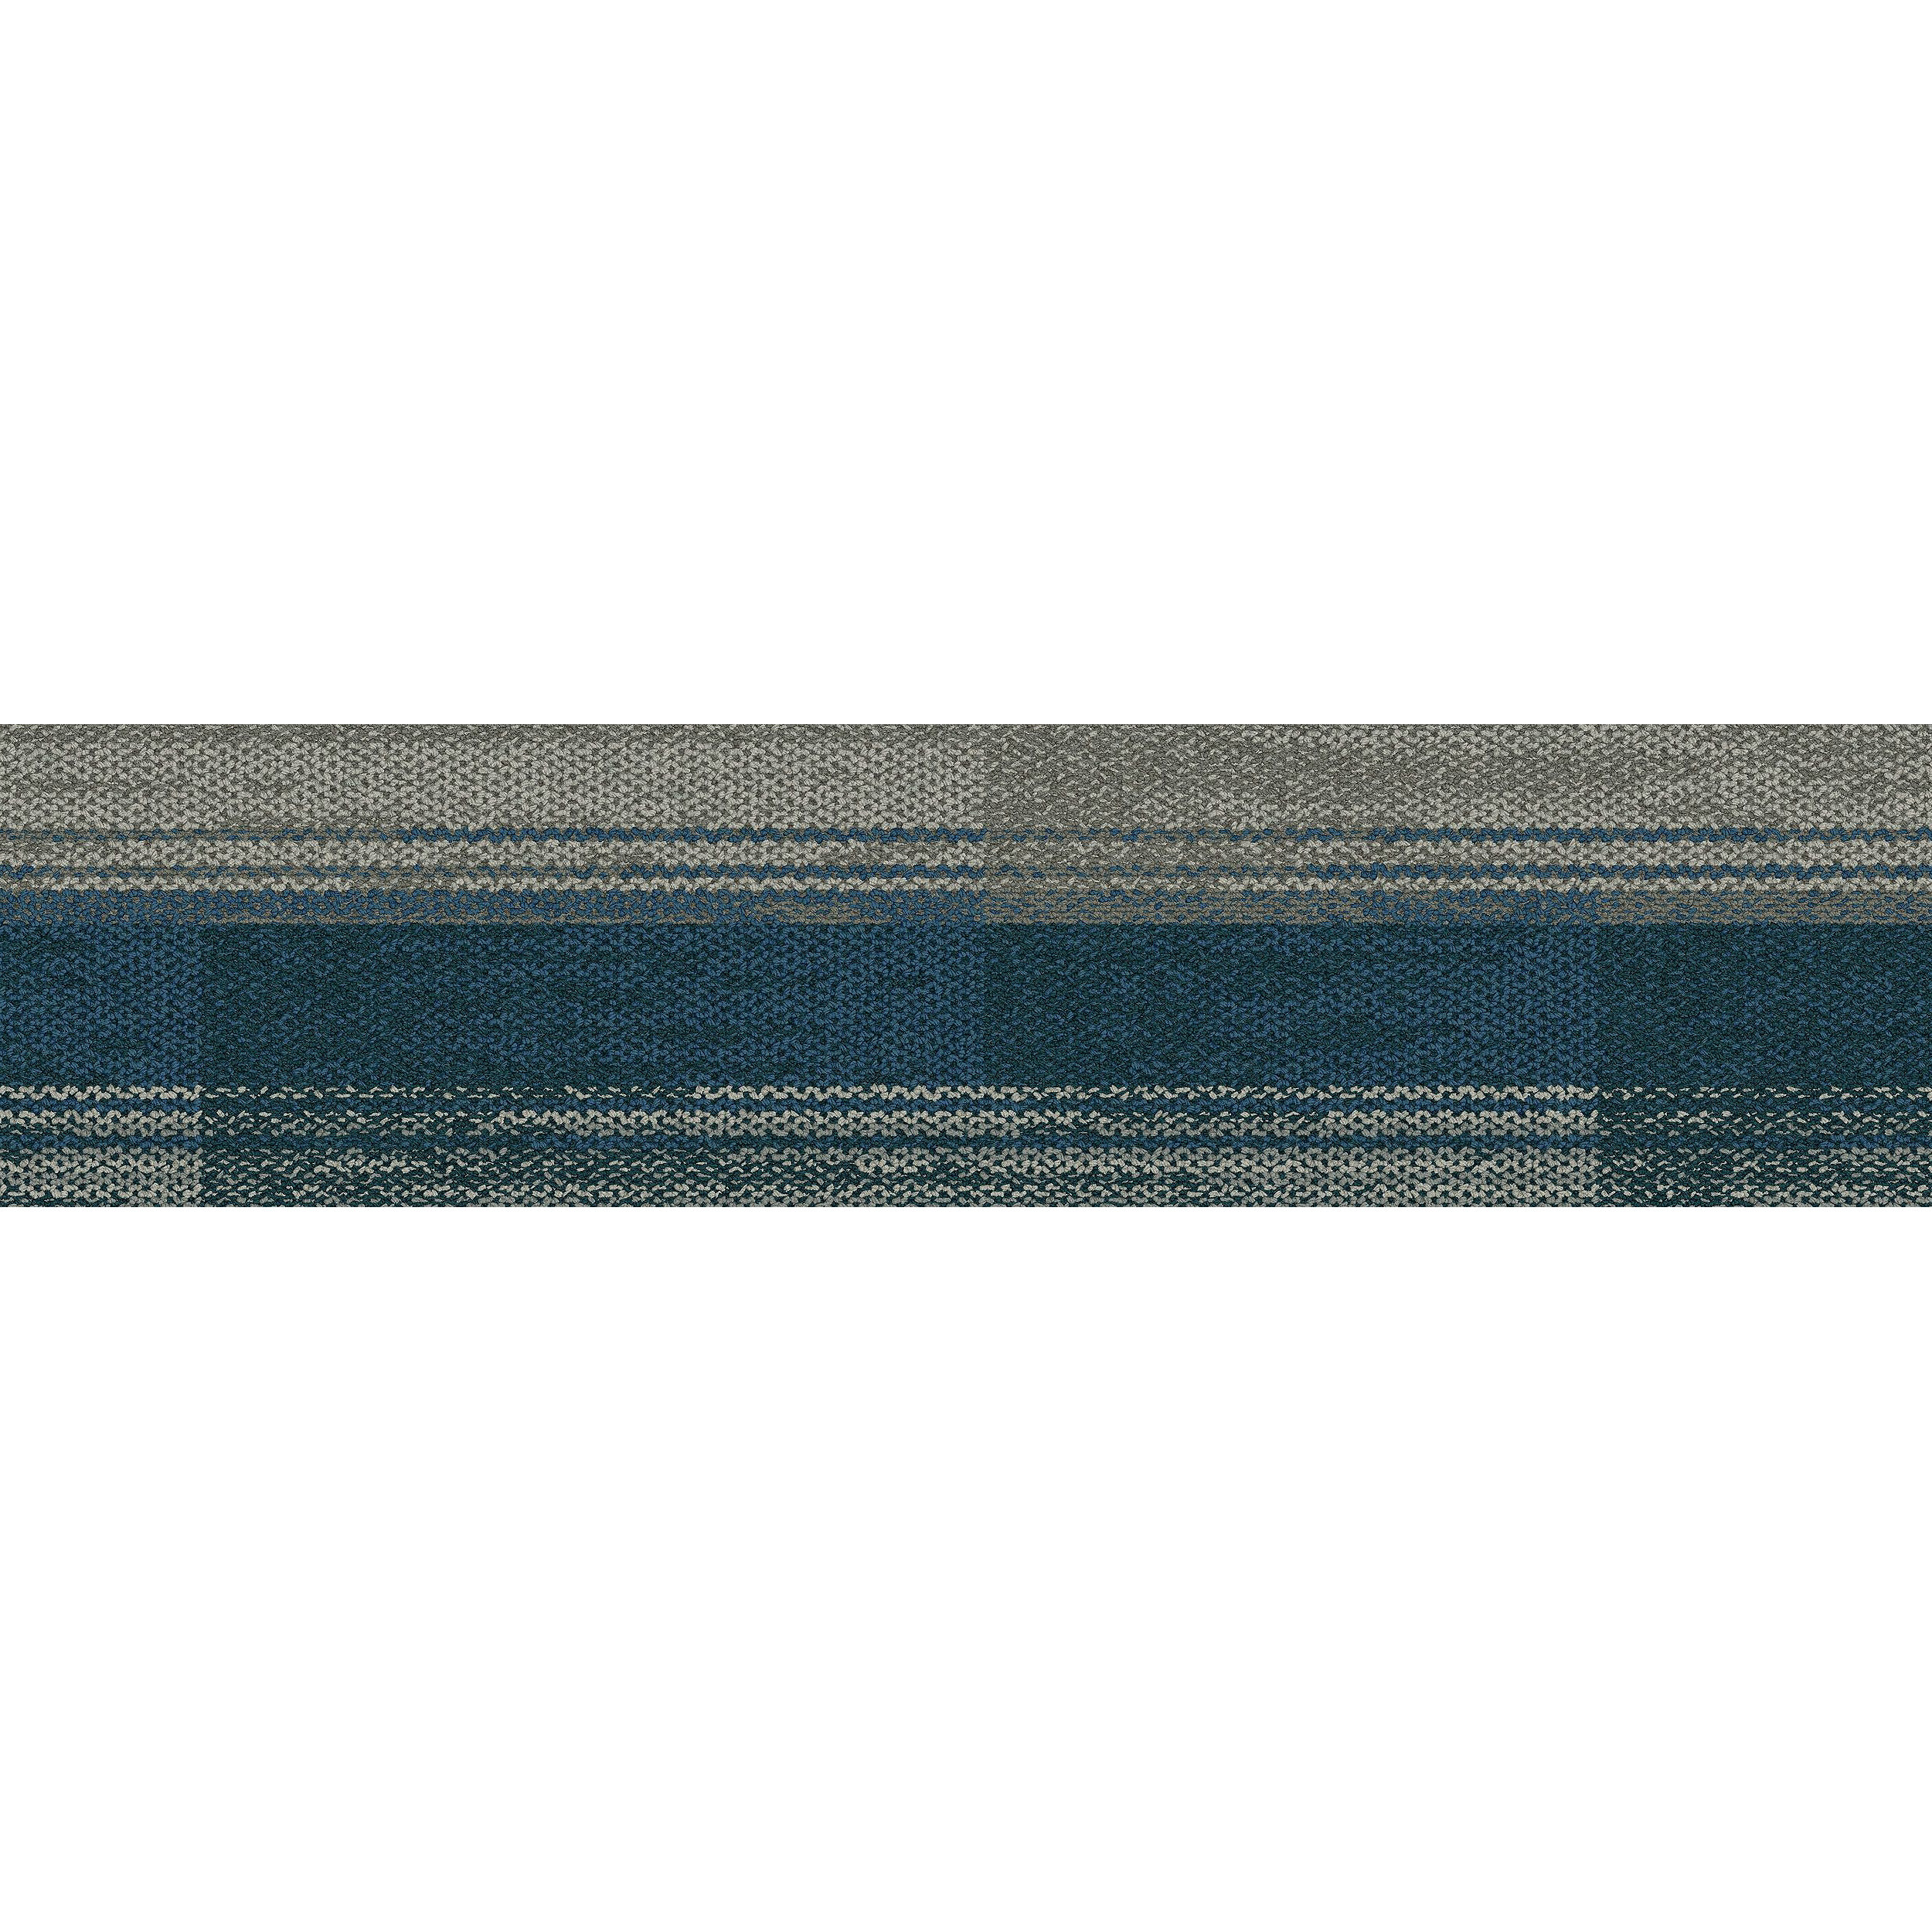 AE315 Carpet Tile In Mist/Aquamarine imagen número 9